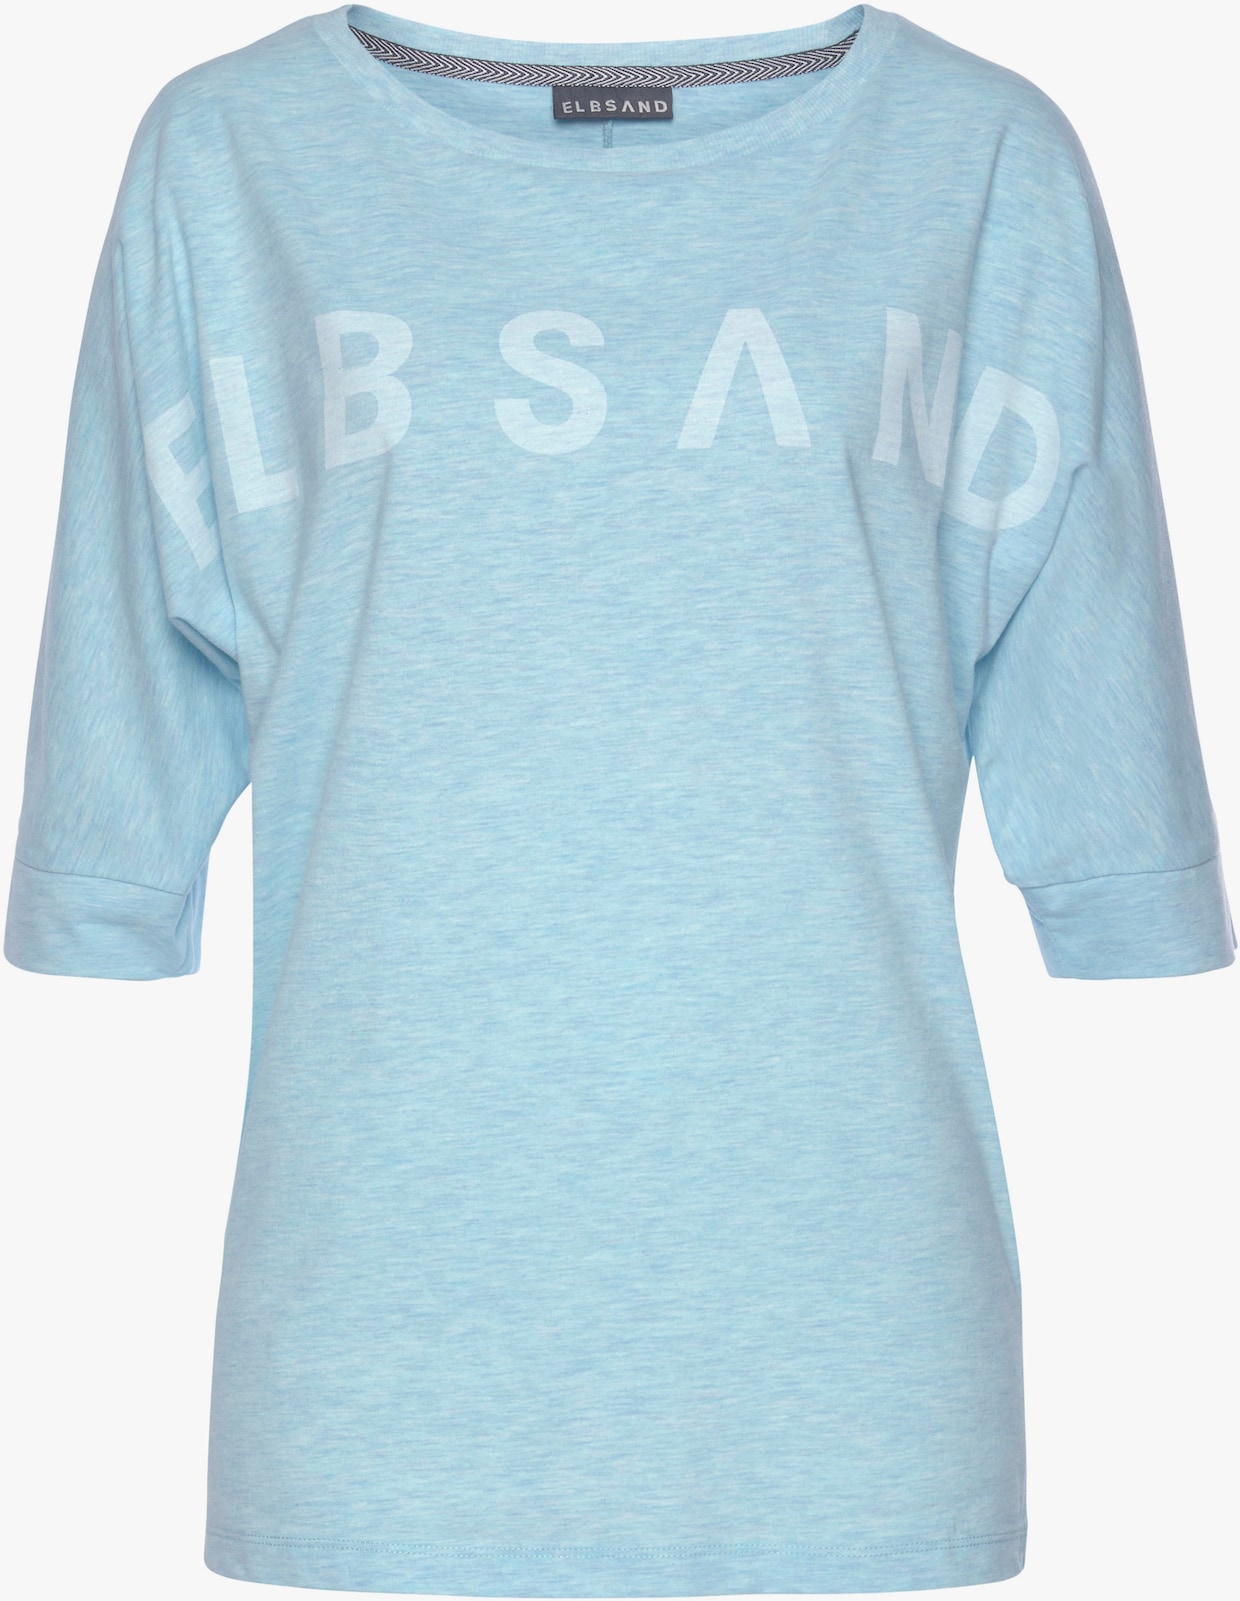 Elbsand Shirt met 3/4-mouw - lichtblauw